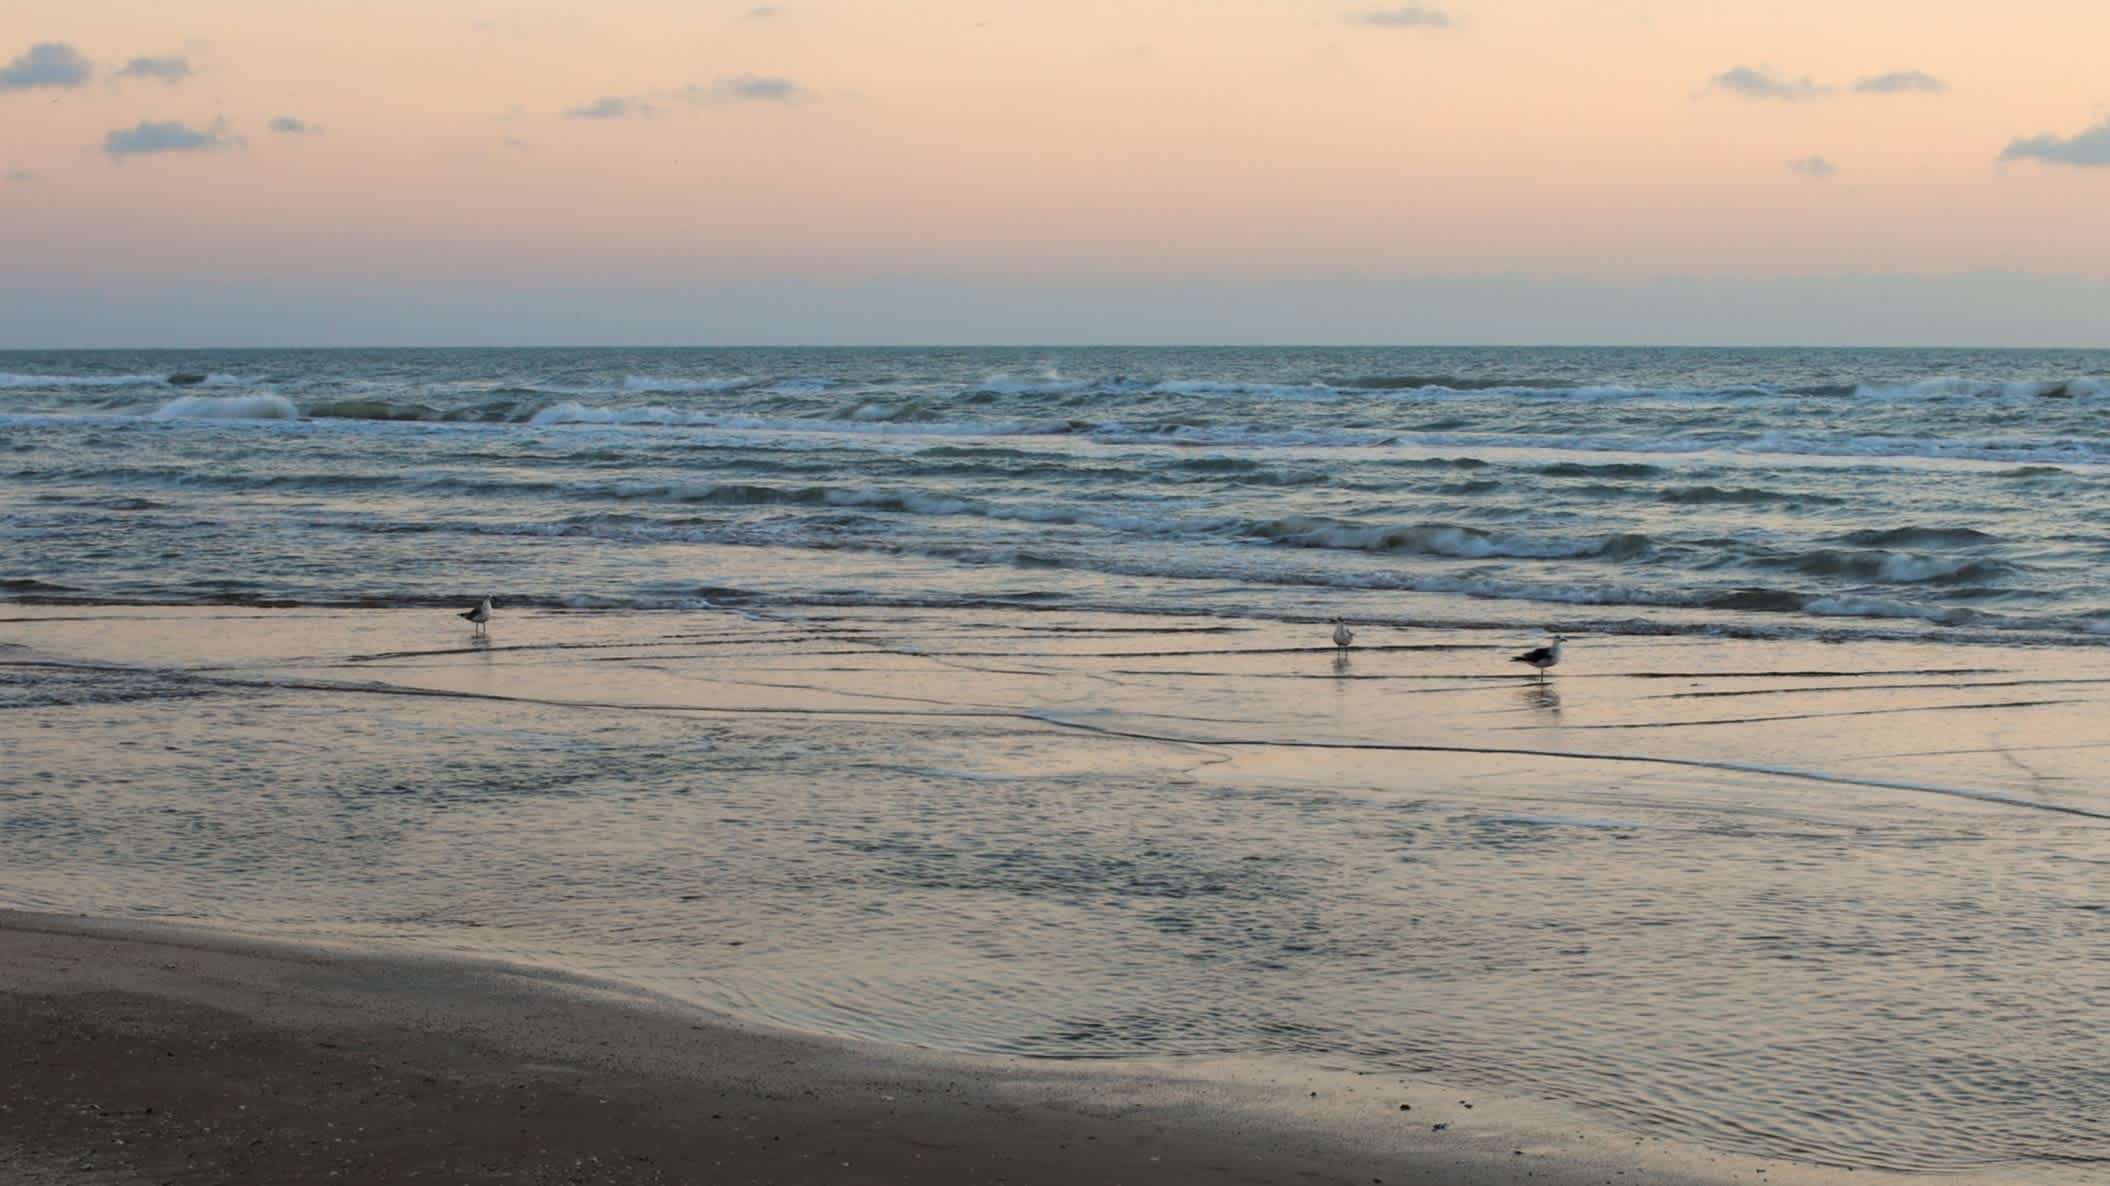 Der Strand Galveston Island East Beach, Texas, USA bei Sonnendämmerung.